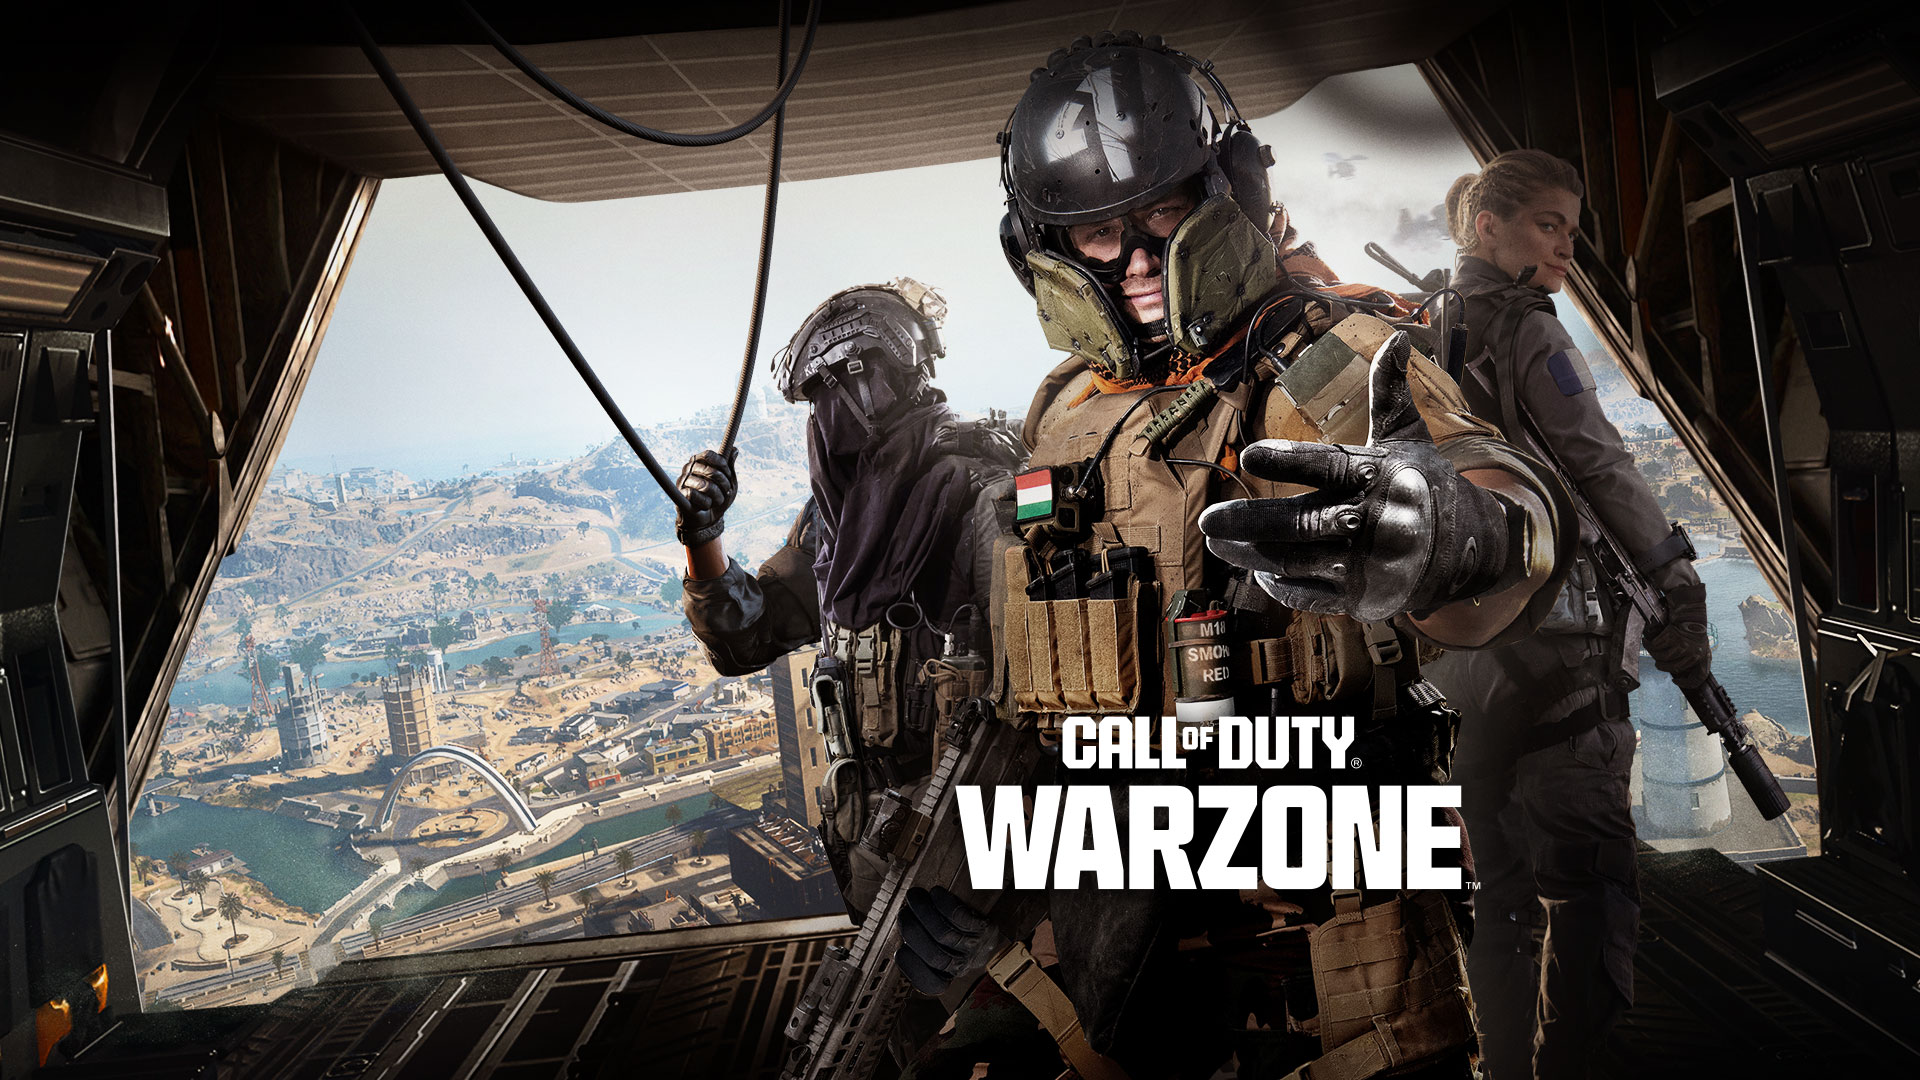 Call of Duty Warzone. Bir kargo uçağının arkasında duran üç Operatör, ellerini uzatarak sizi aksiyona katılmaya davet ediyor.